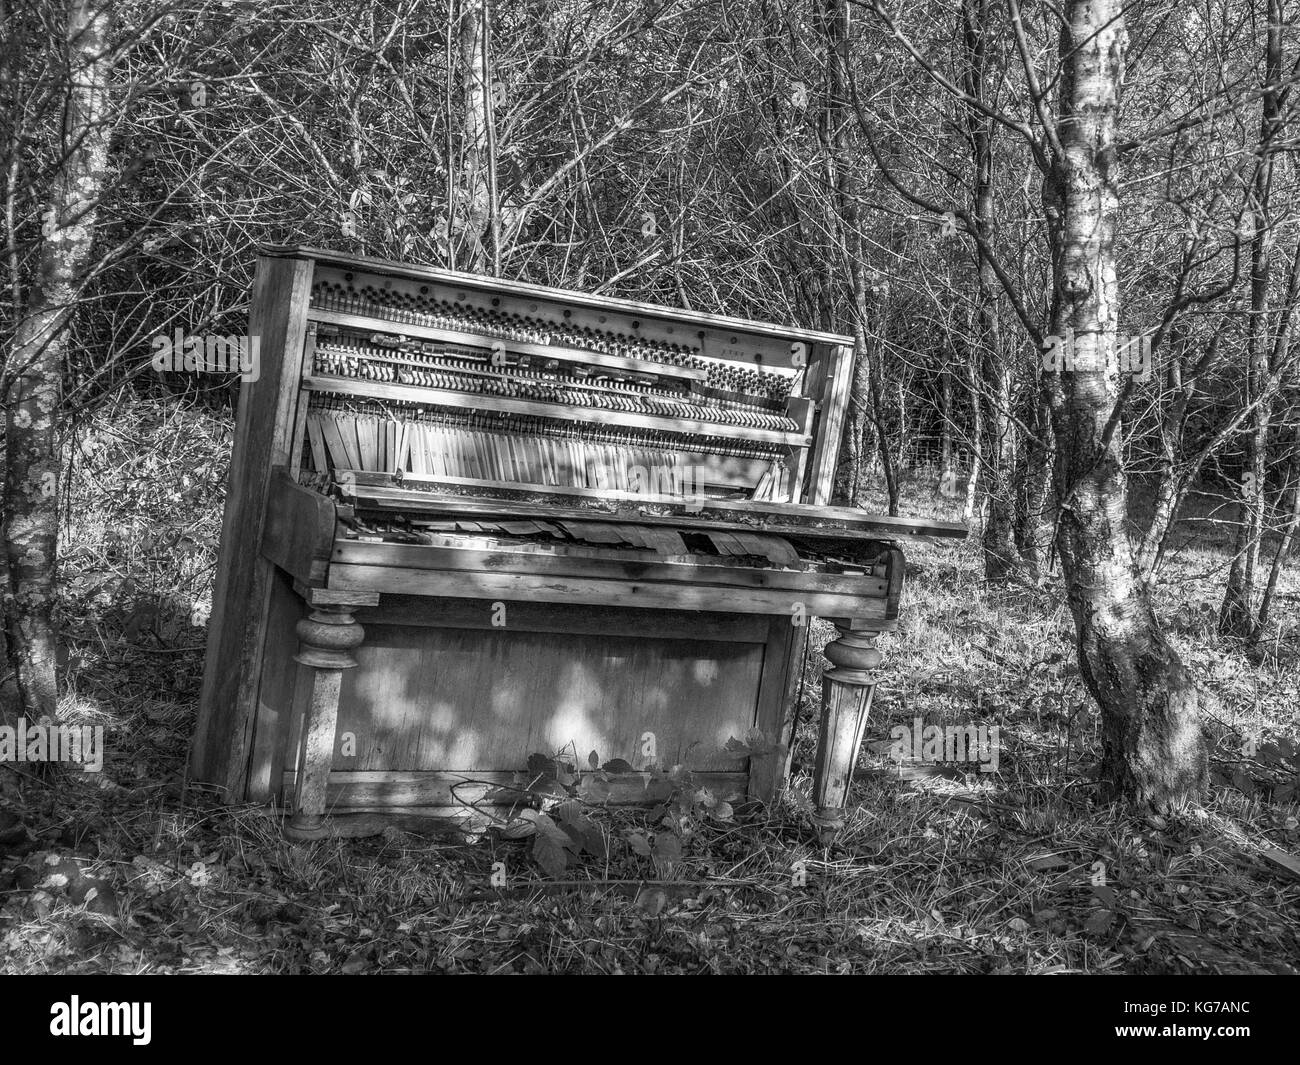 Vieux Piano abandonné dans la forêt galloise, Monochrome Banque D'Images